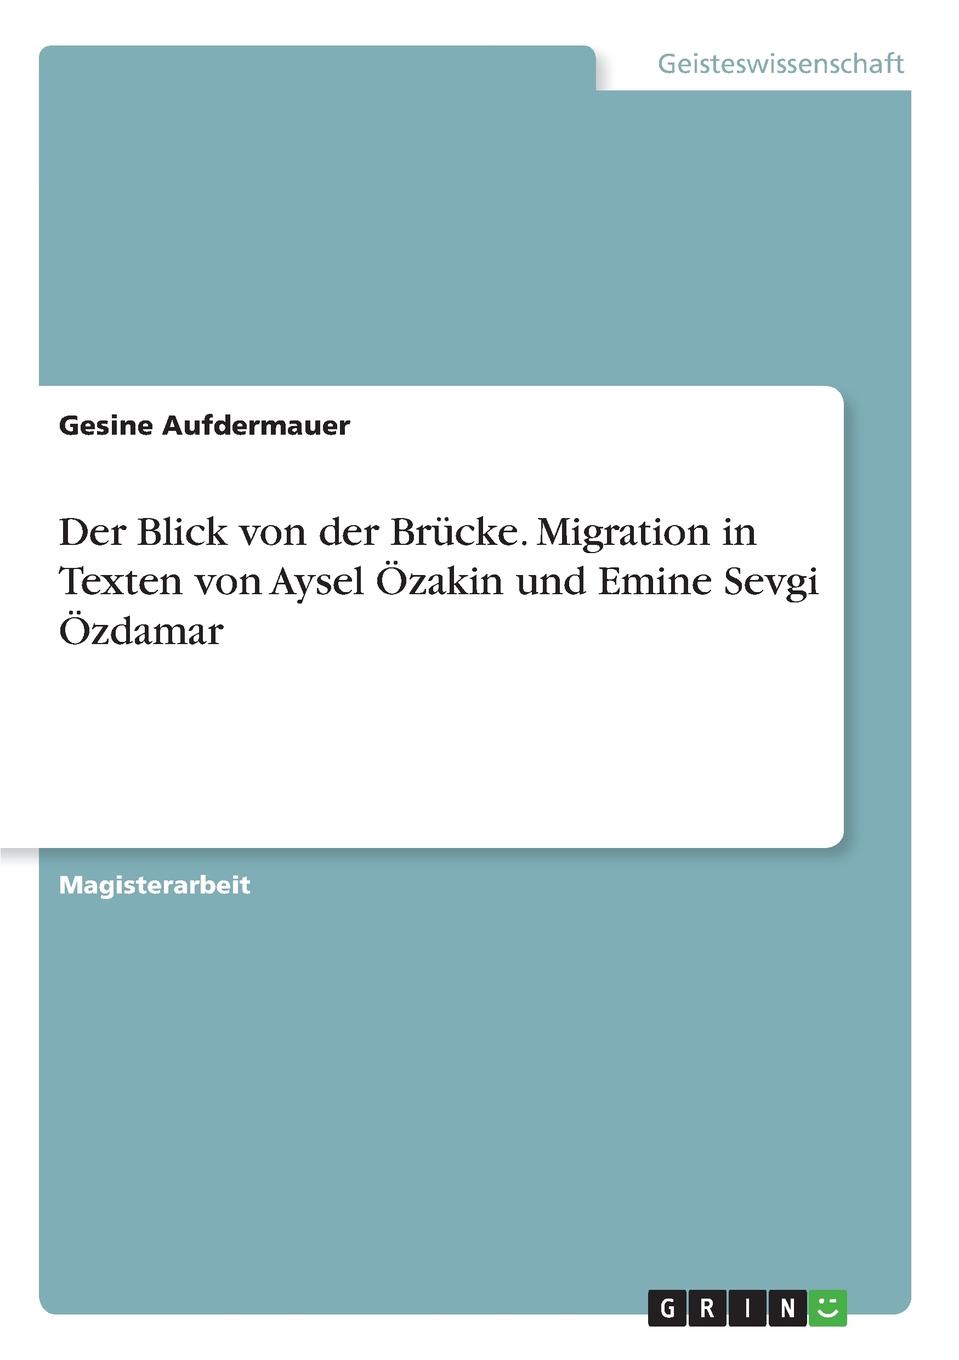 Gesine Aufdermauer Der Blick von der Brucke. Migration in Texten von Aysel Ozakin und Emine Sevgi Ozdamar